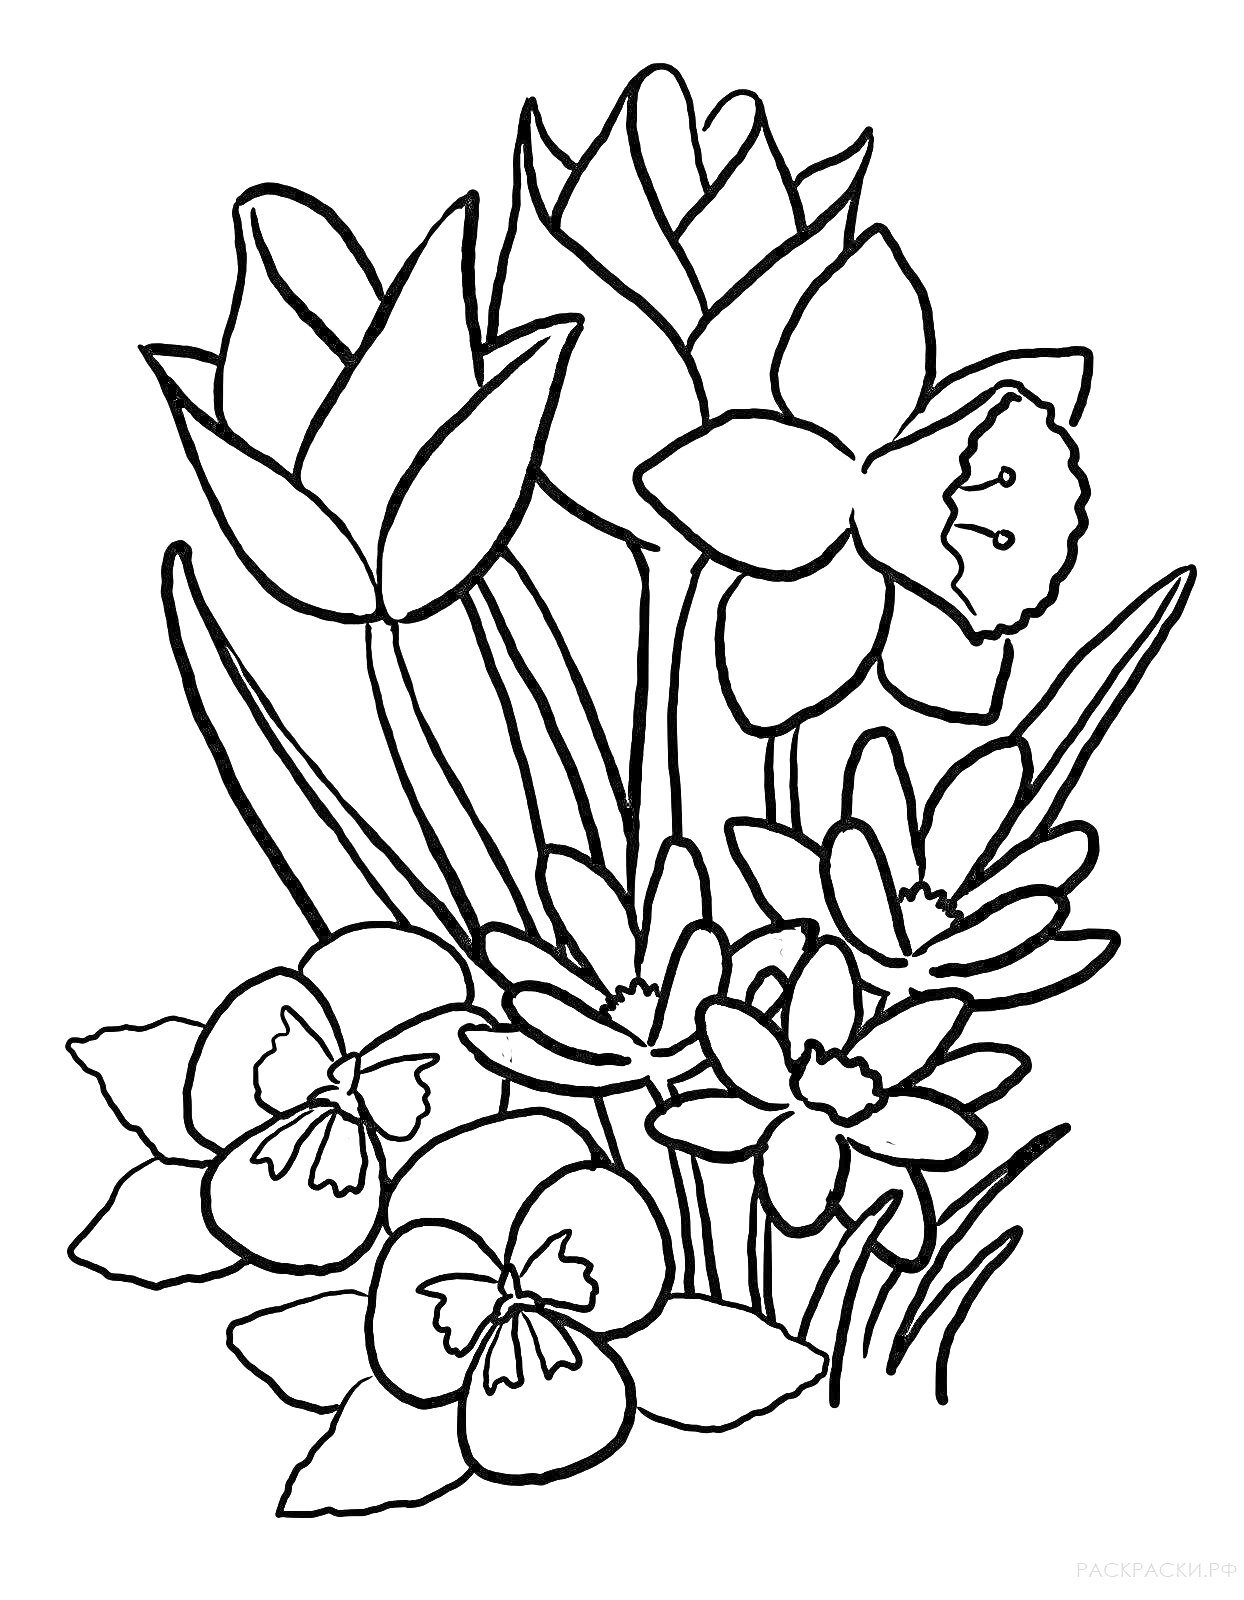 Раскраска Весенние цветы - тюльпаны, нарцисс, нарциссы, анютины глазки